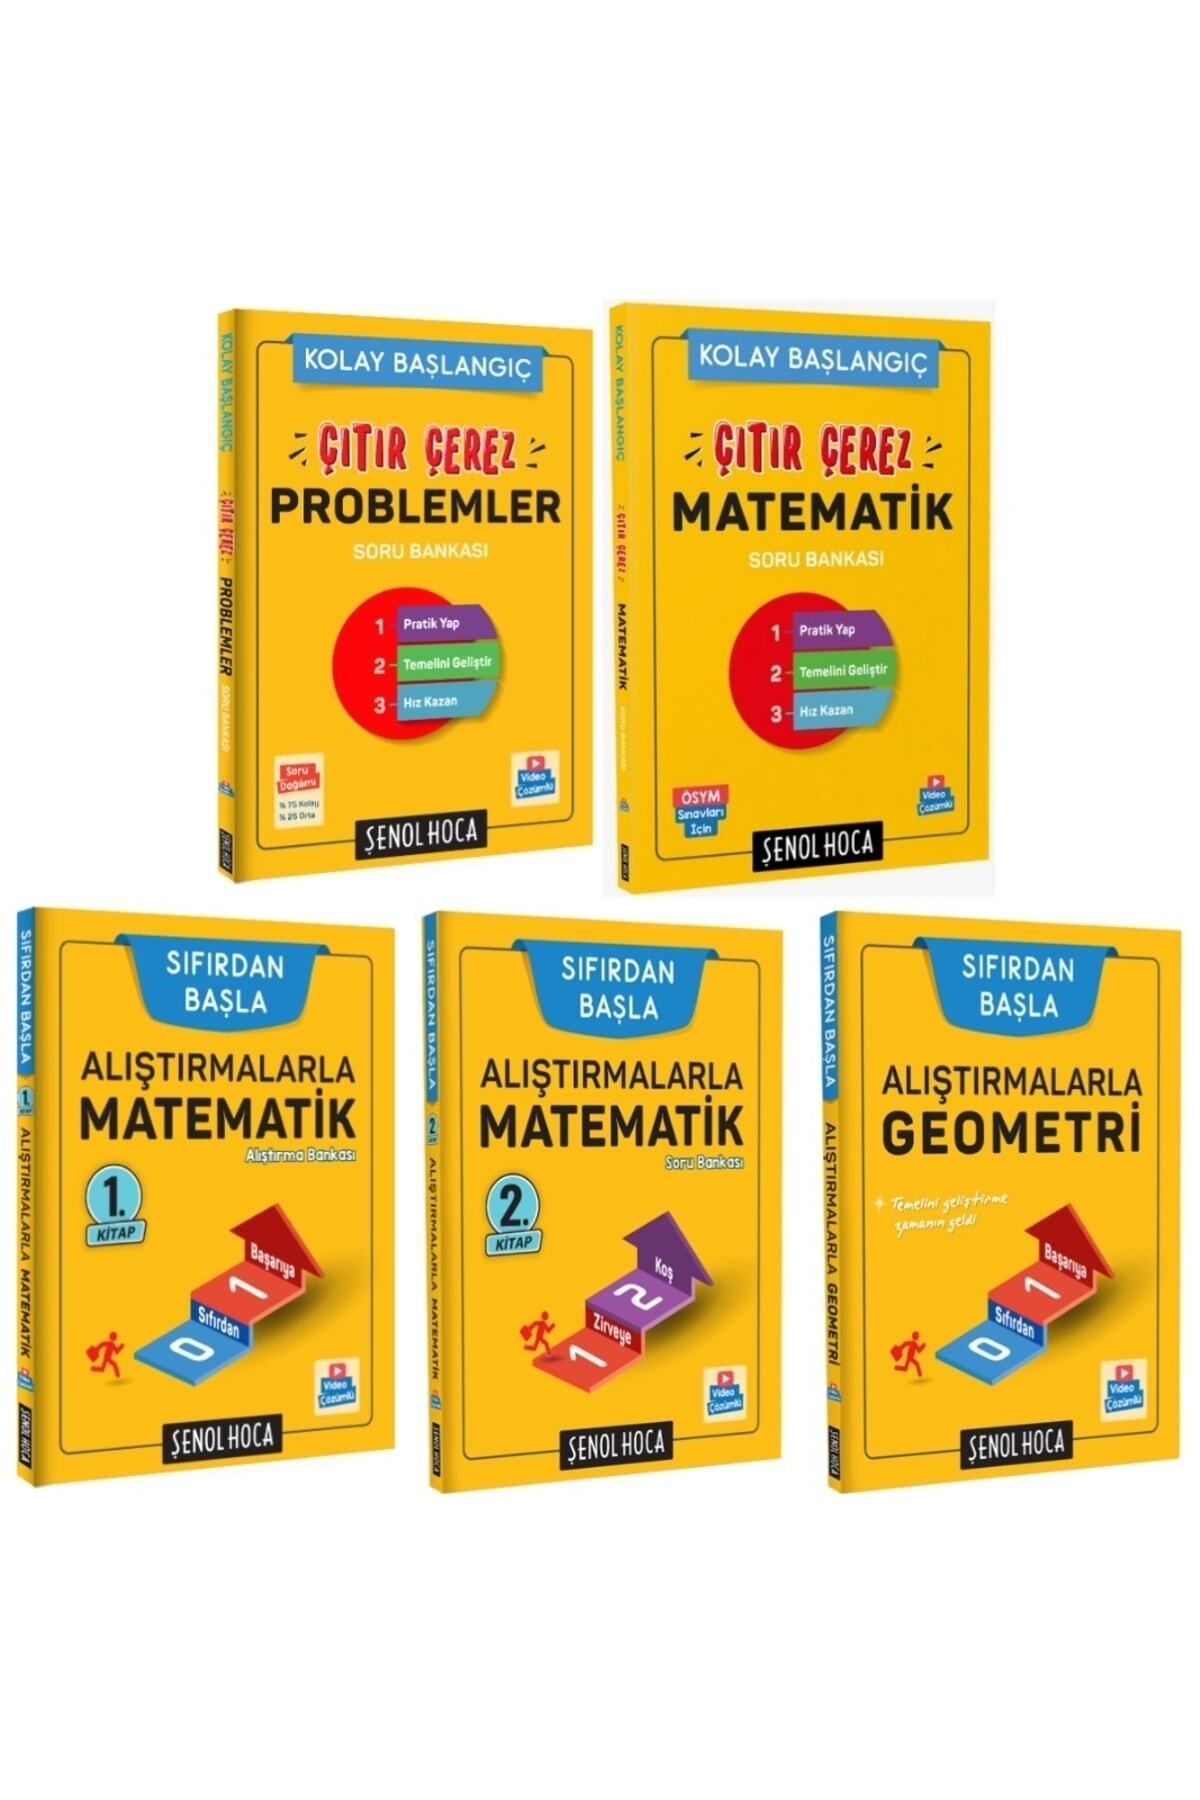 Şenol Hoca Yayınları Alıştırmalarla Geometri Matematik 1-2 Ve Çıtır Çerez Problem-matematik Soru Bankası Seti